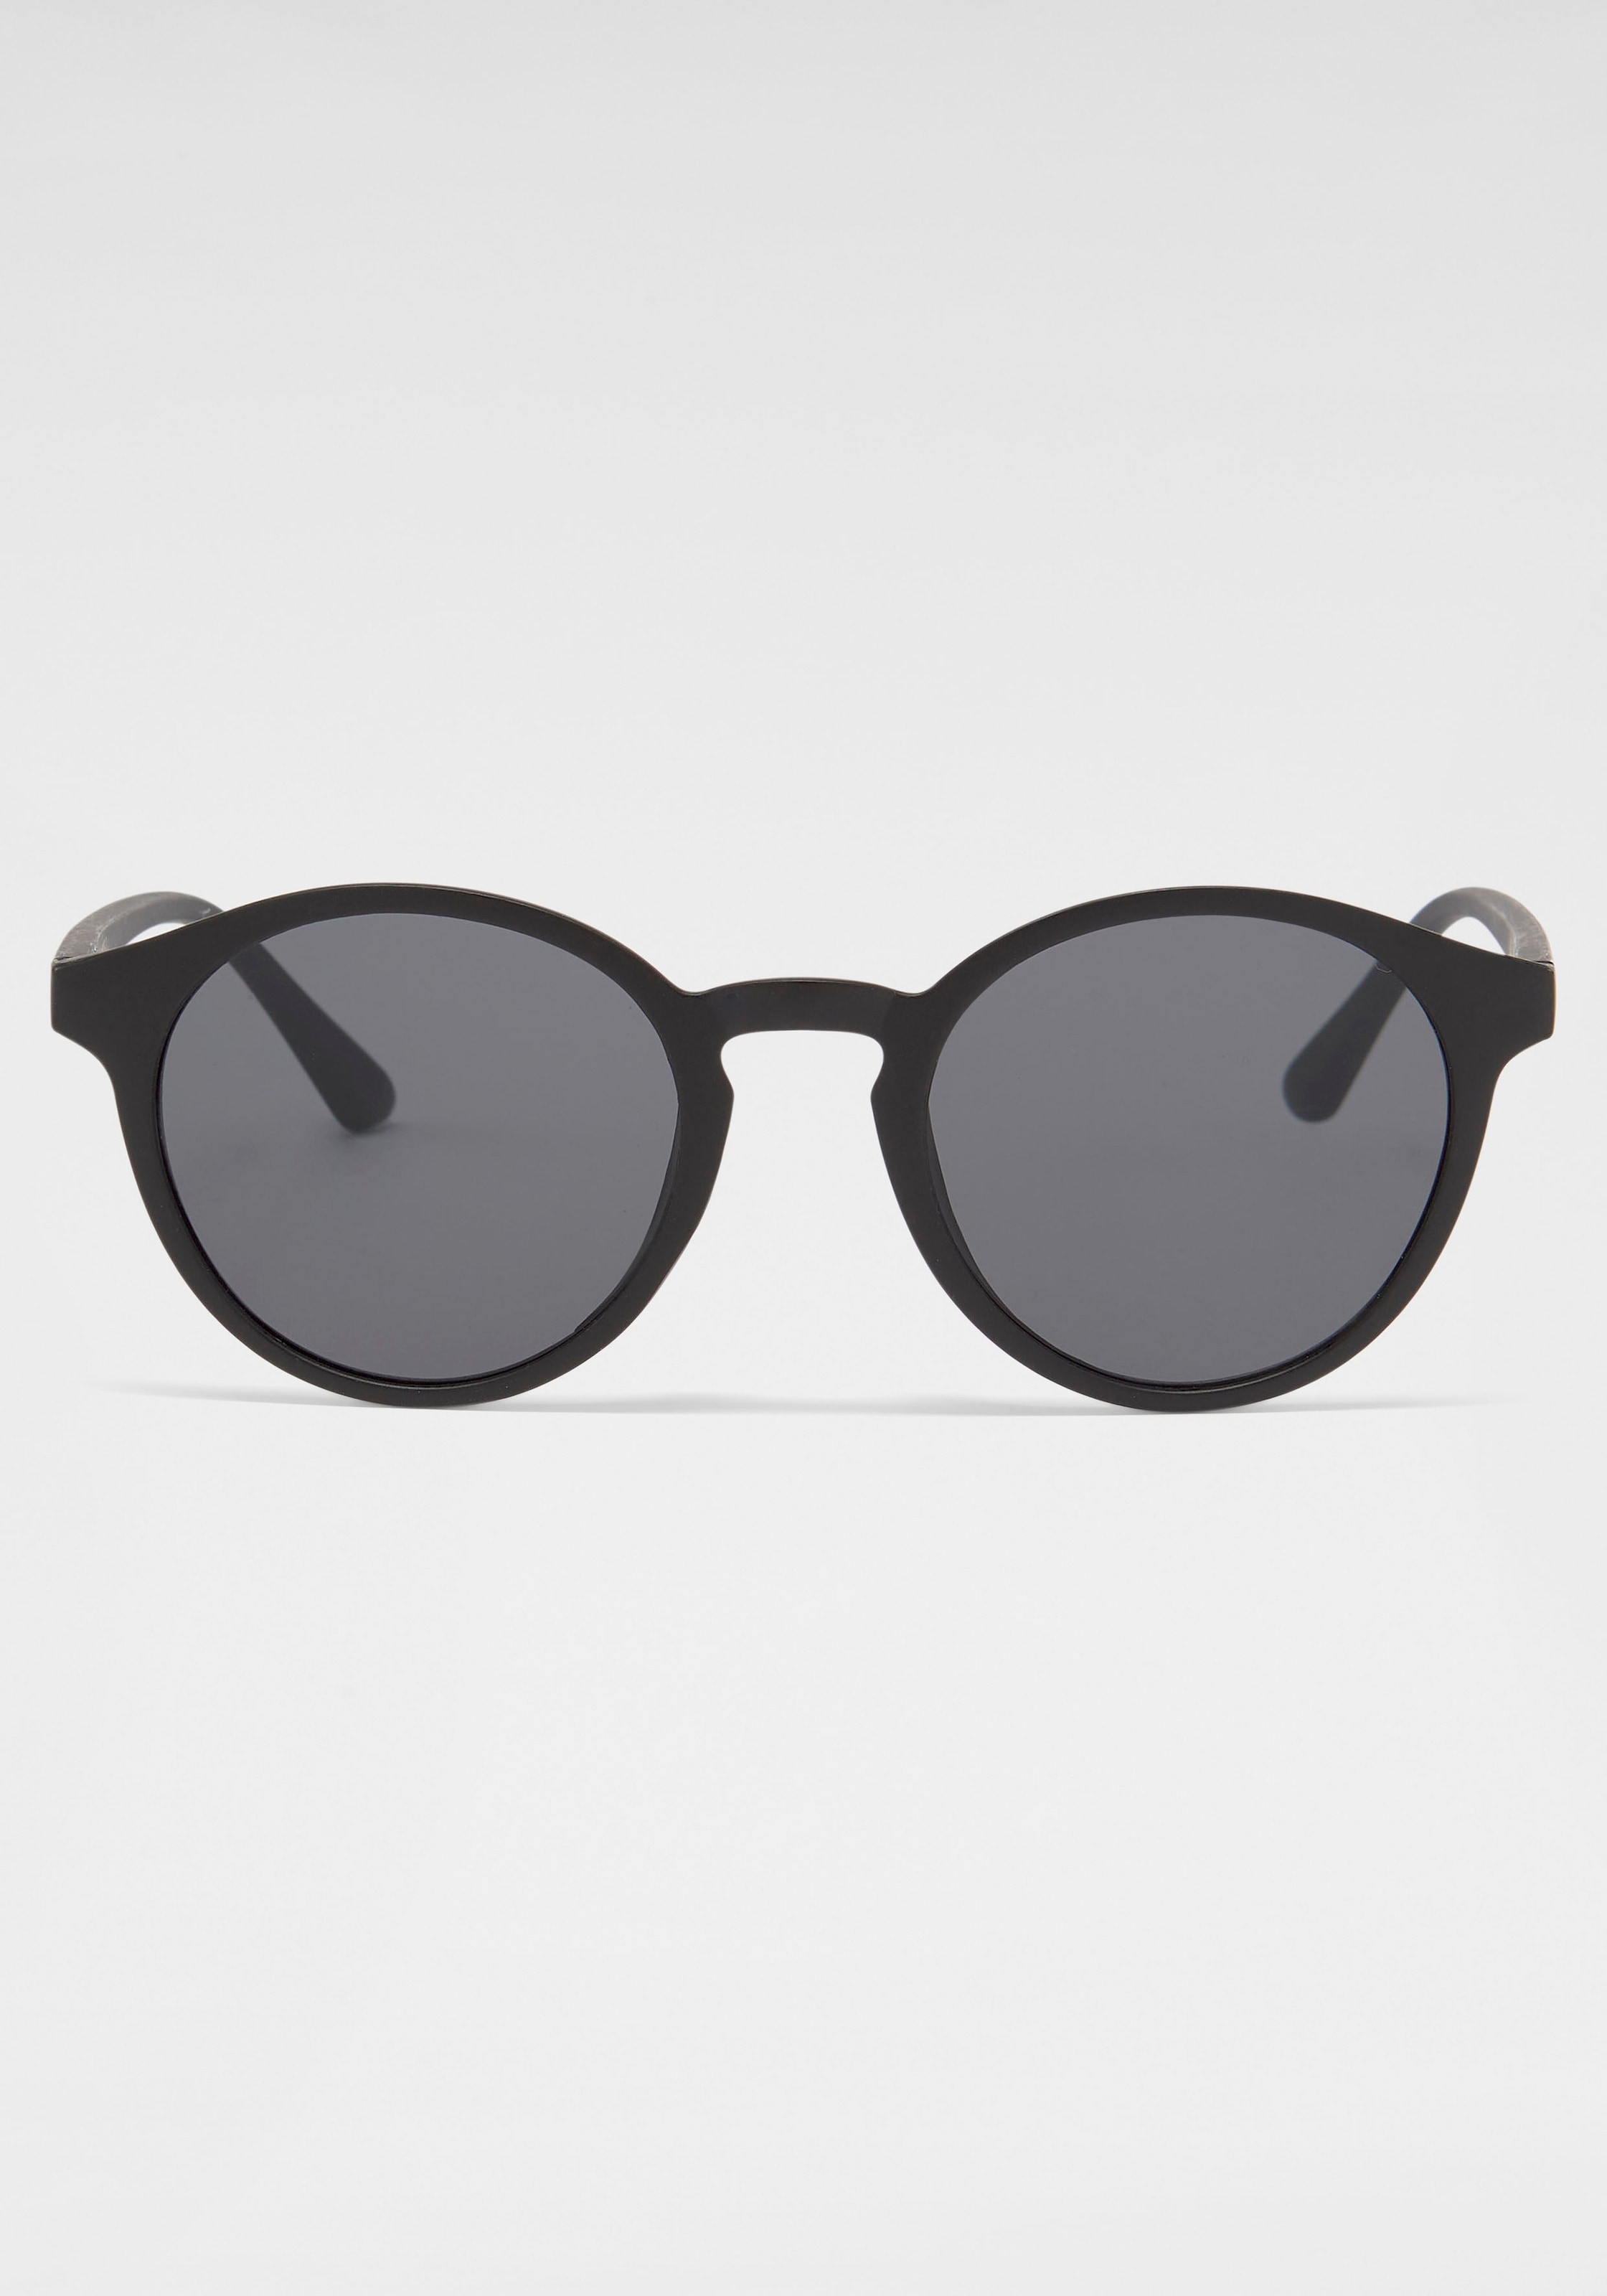 Shop Online im Eyewear OTTO PRIMETTA Sonnenbrille